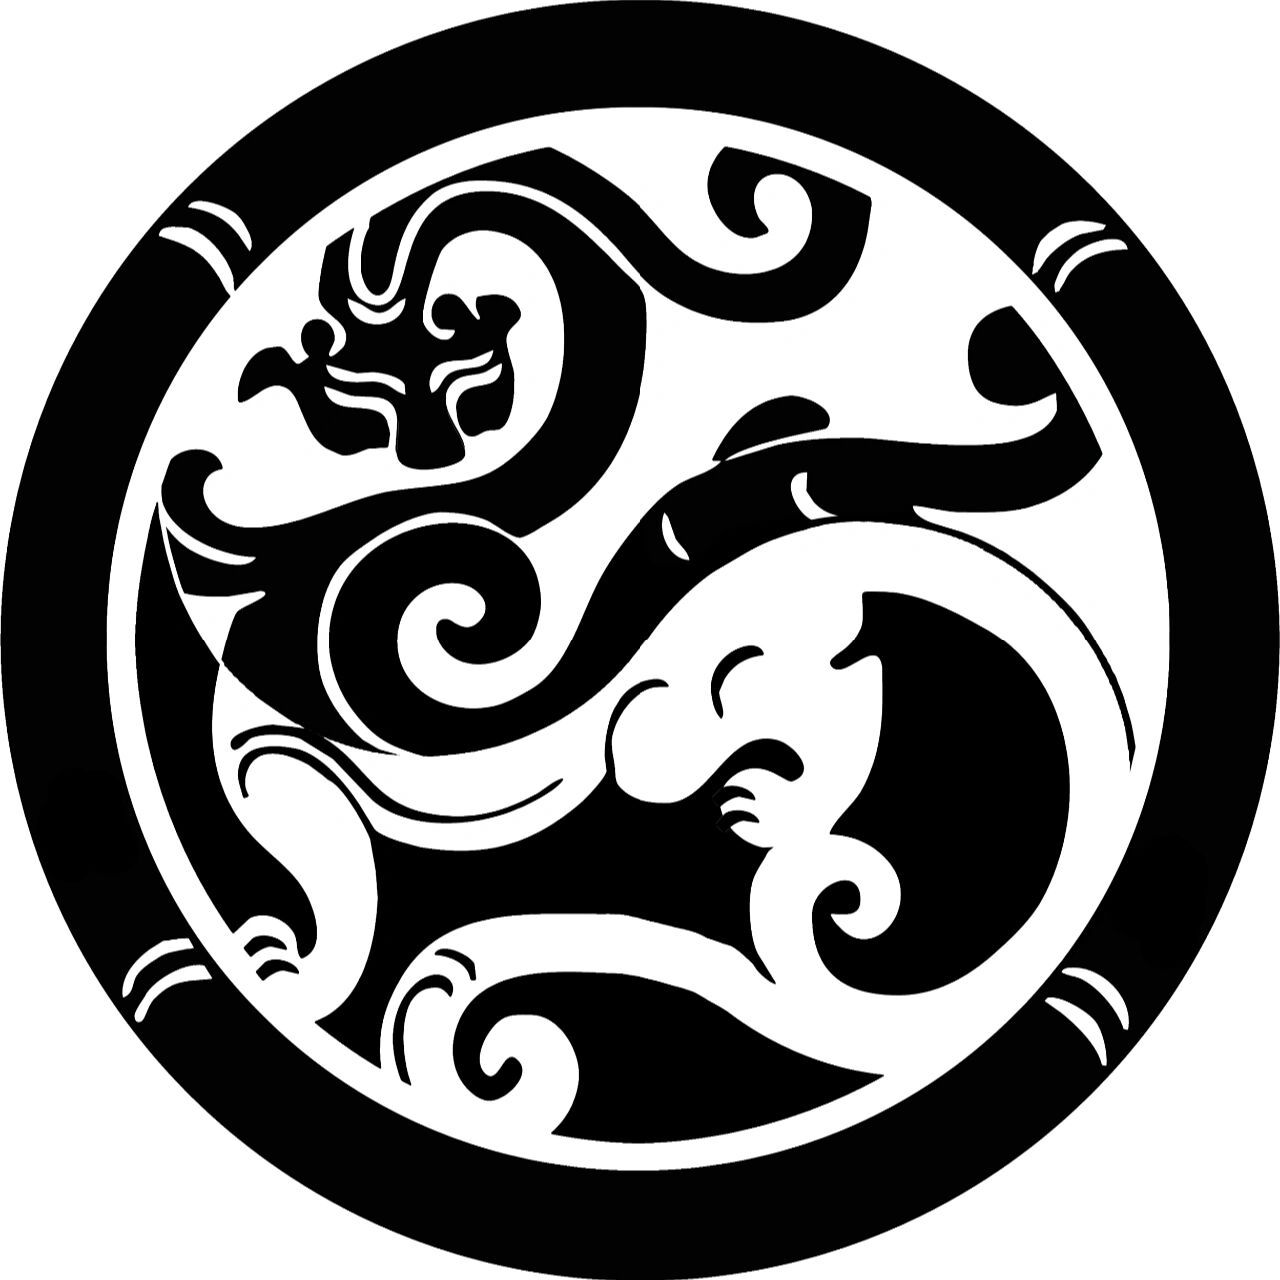 会徽释义 本会会徽以汉代螭龙纹为主体图案,寓意中华文明,龙的传人